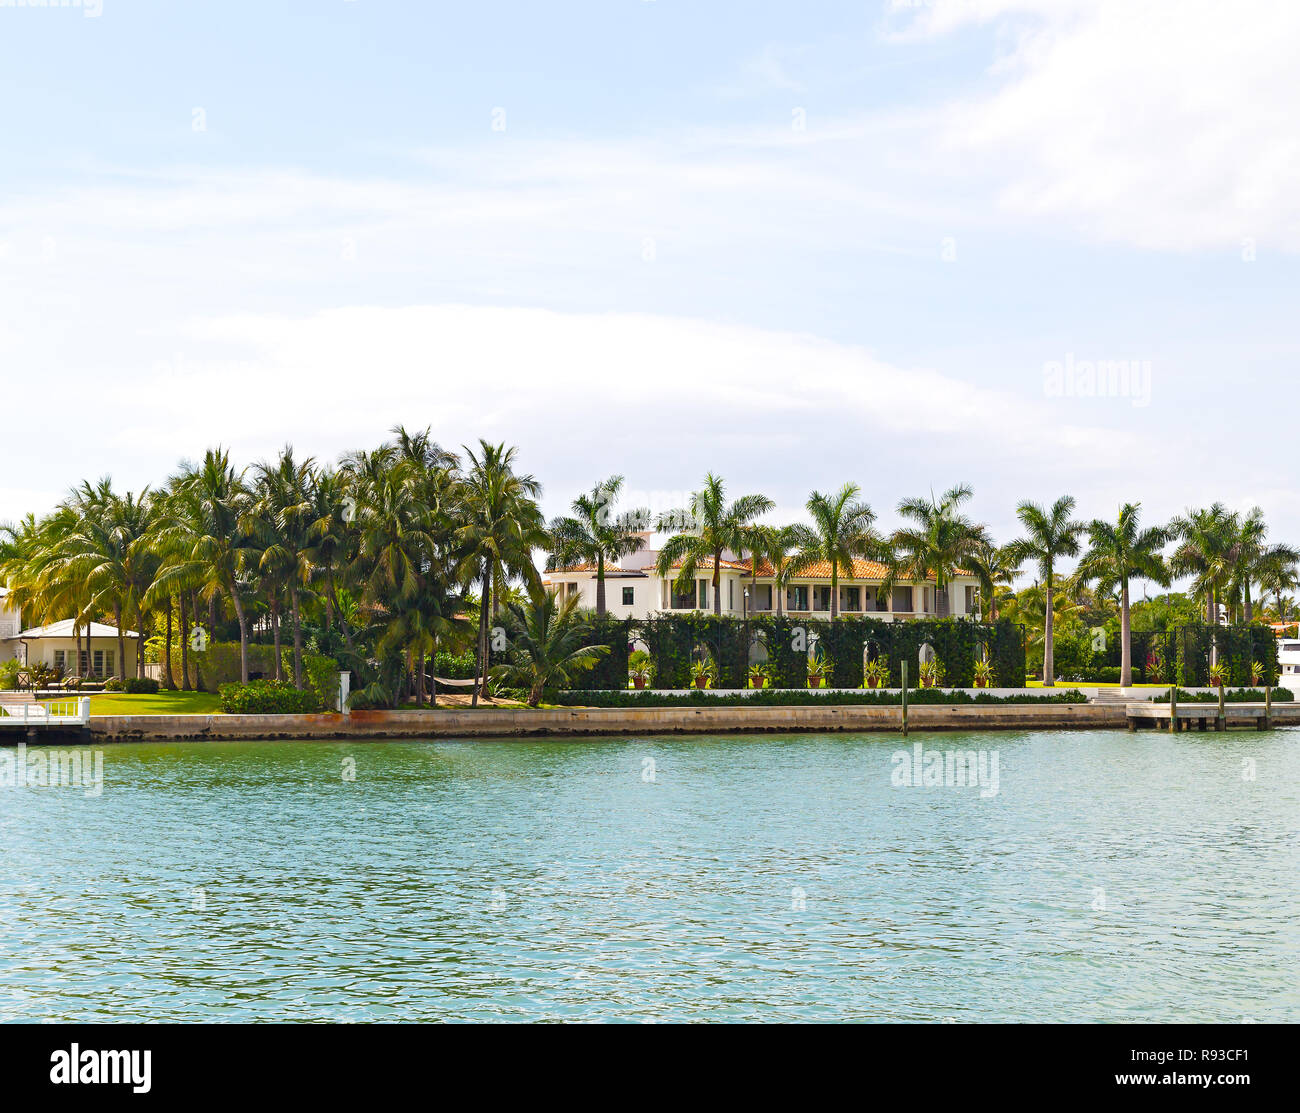 Palmiers décorent le comment de pelouse. Waterfront suburb de palmiers de Miami, Floride Banque D'Images